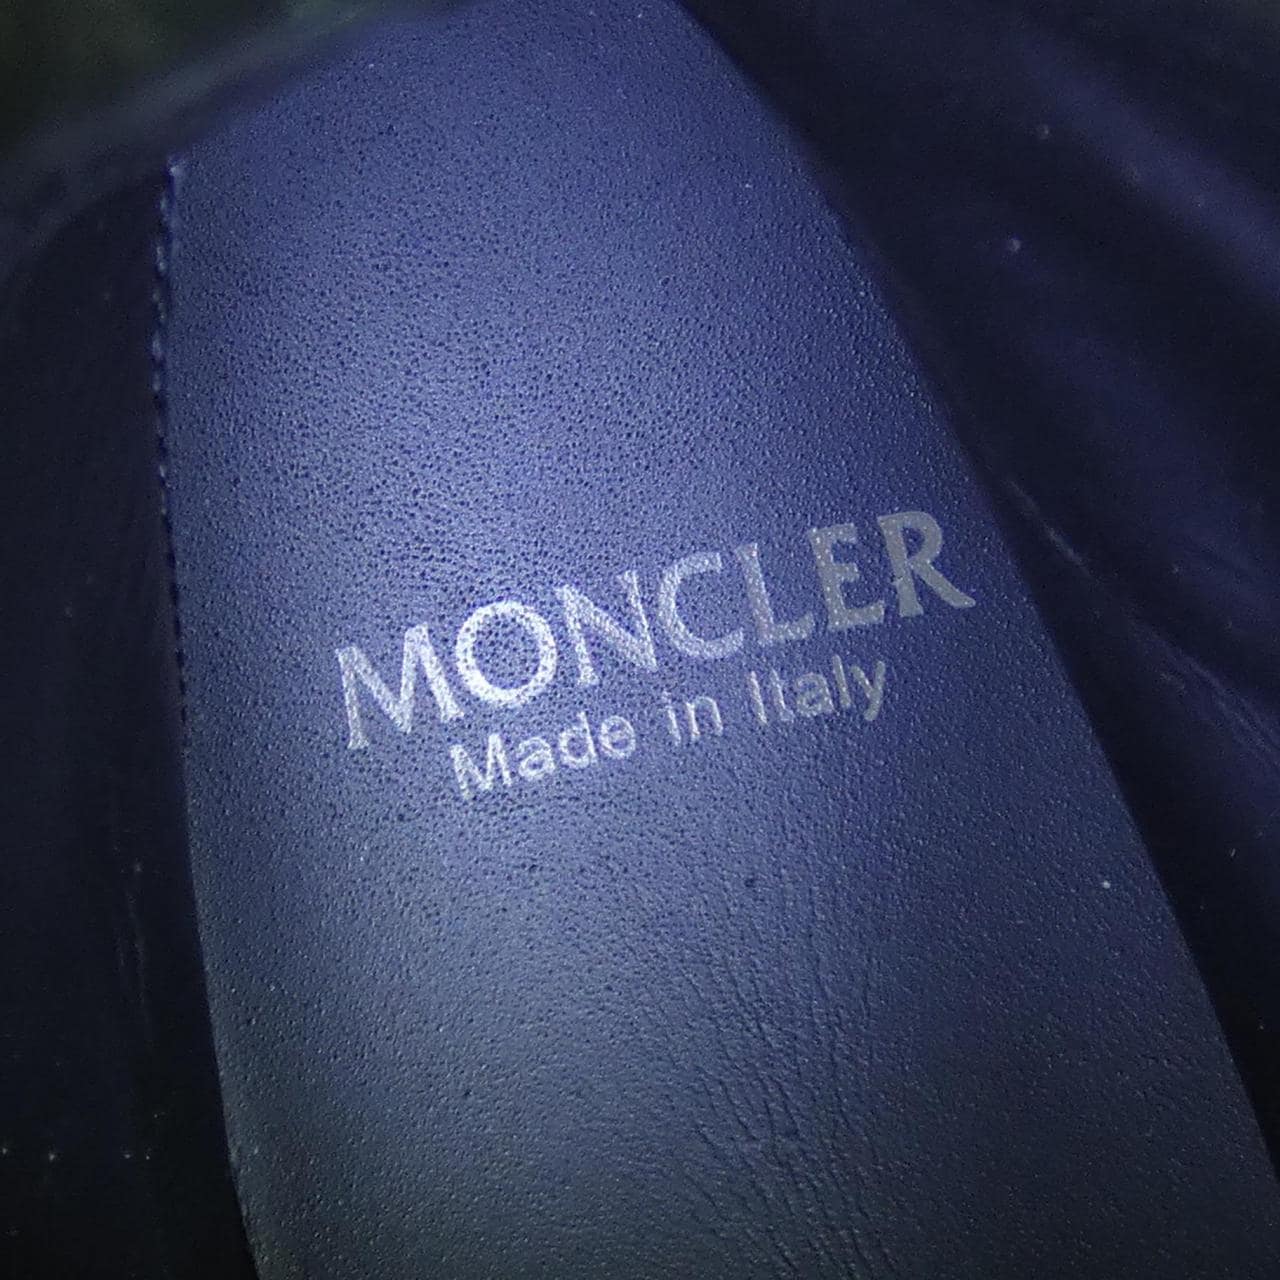 モンクレール MONCLER ブーツ